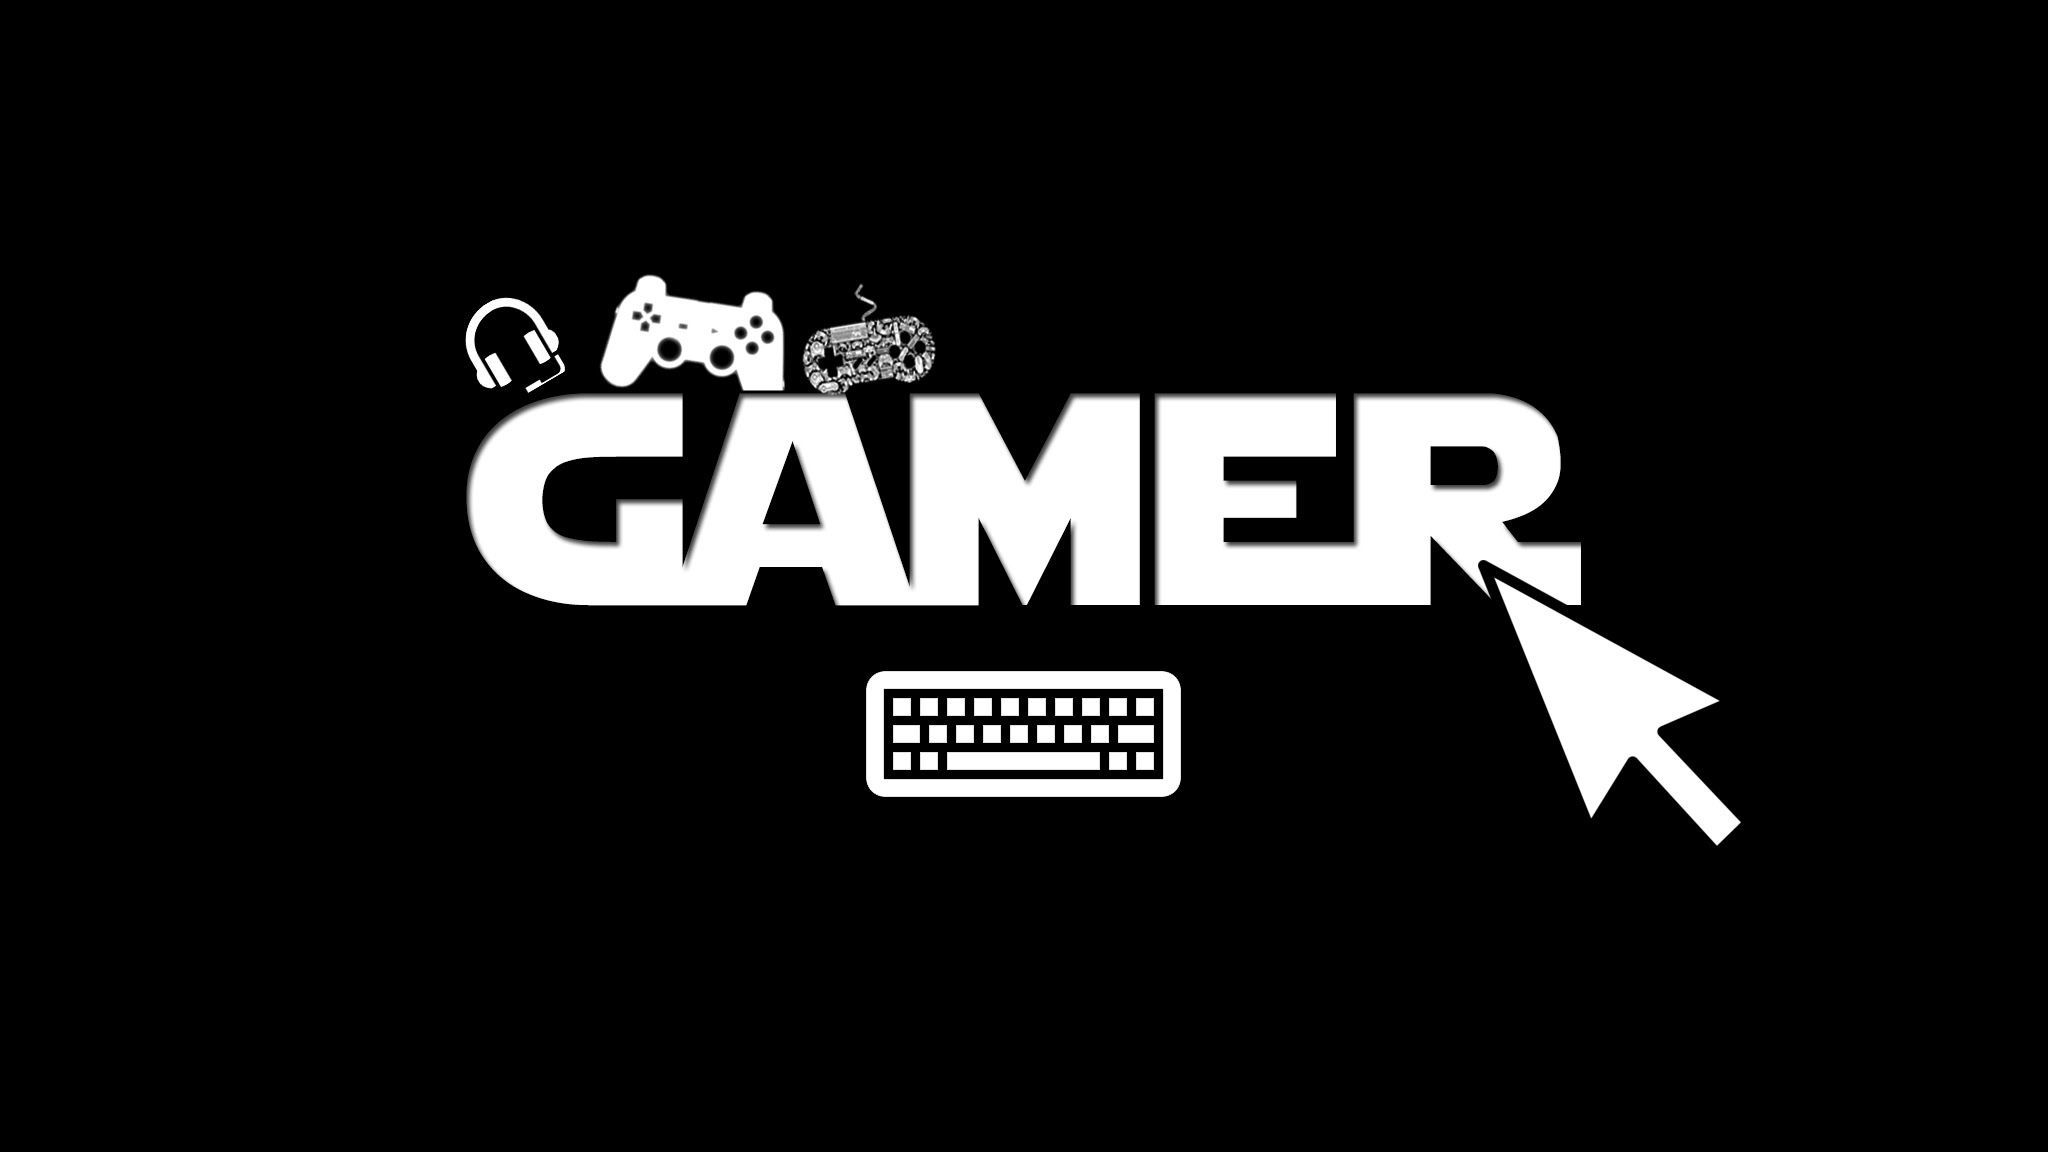 Gamer. Youtube jogos, Imagens para banner, Fotos de jogos